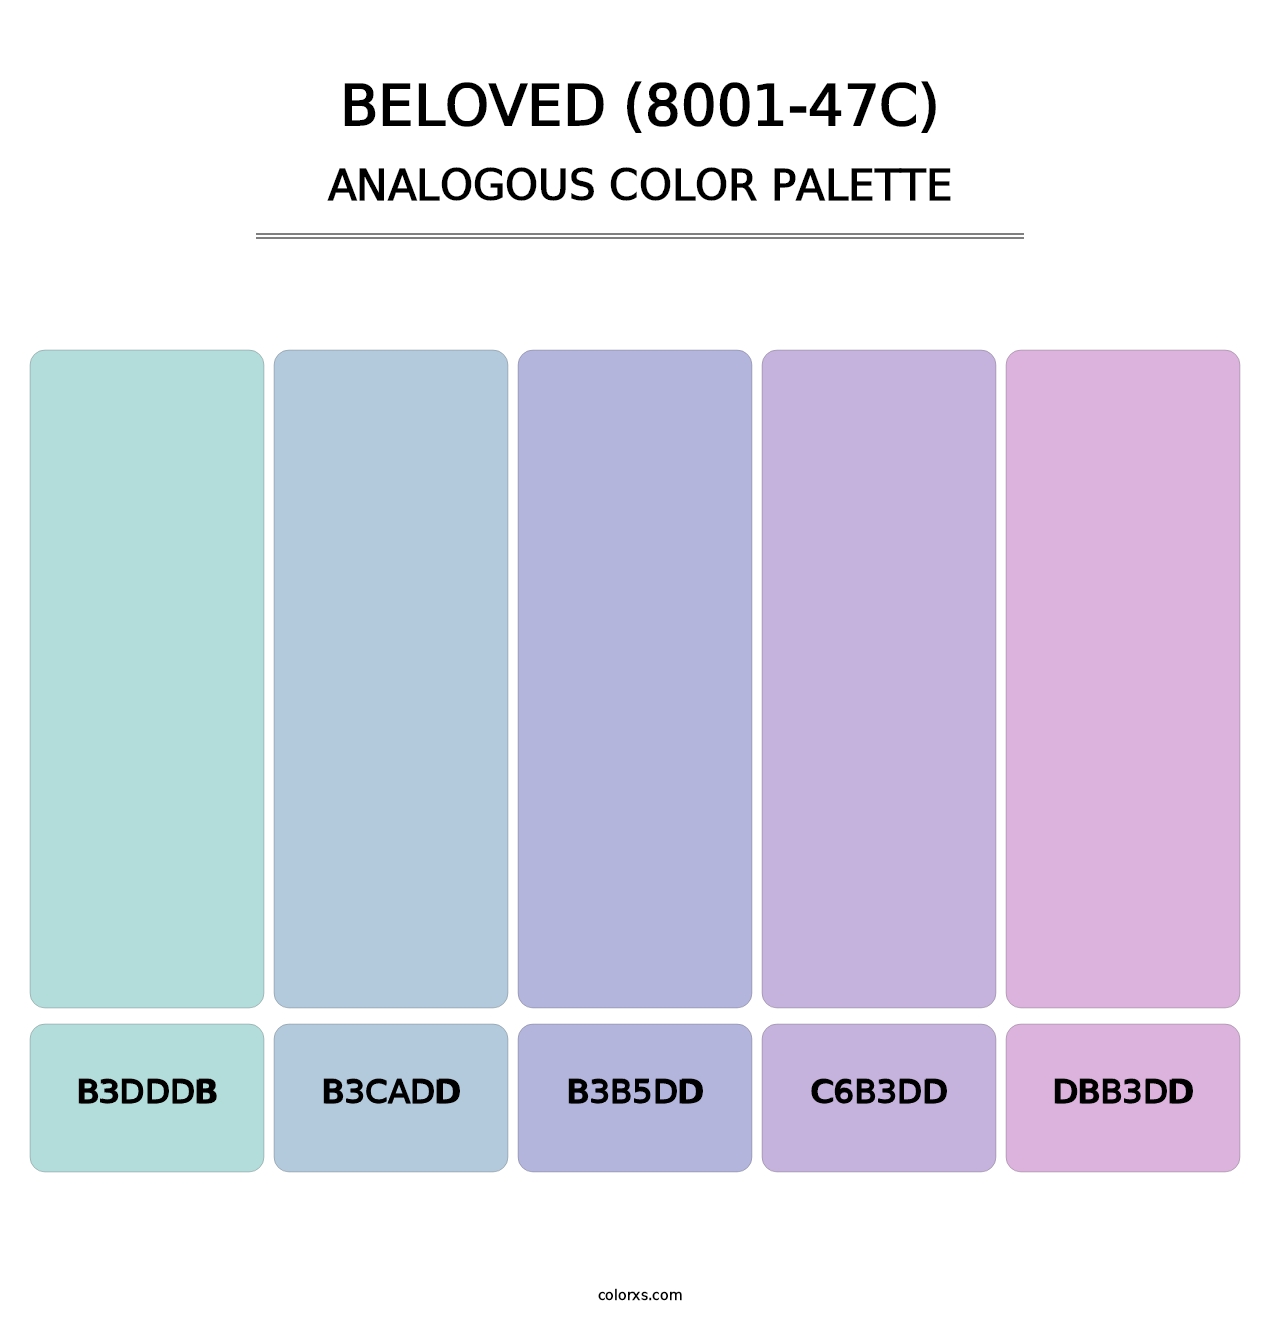 Beloved (8001-47C) - Analogous Color Palette